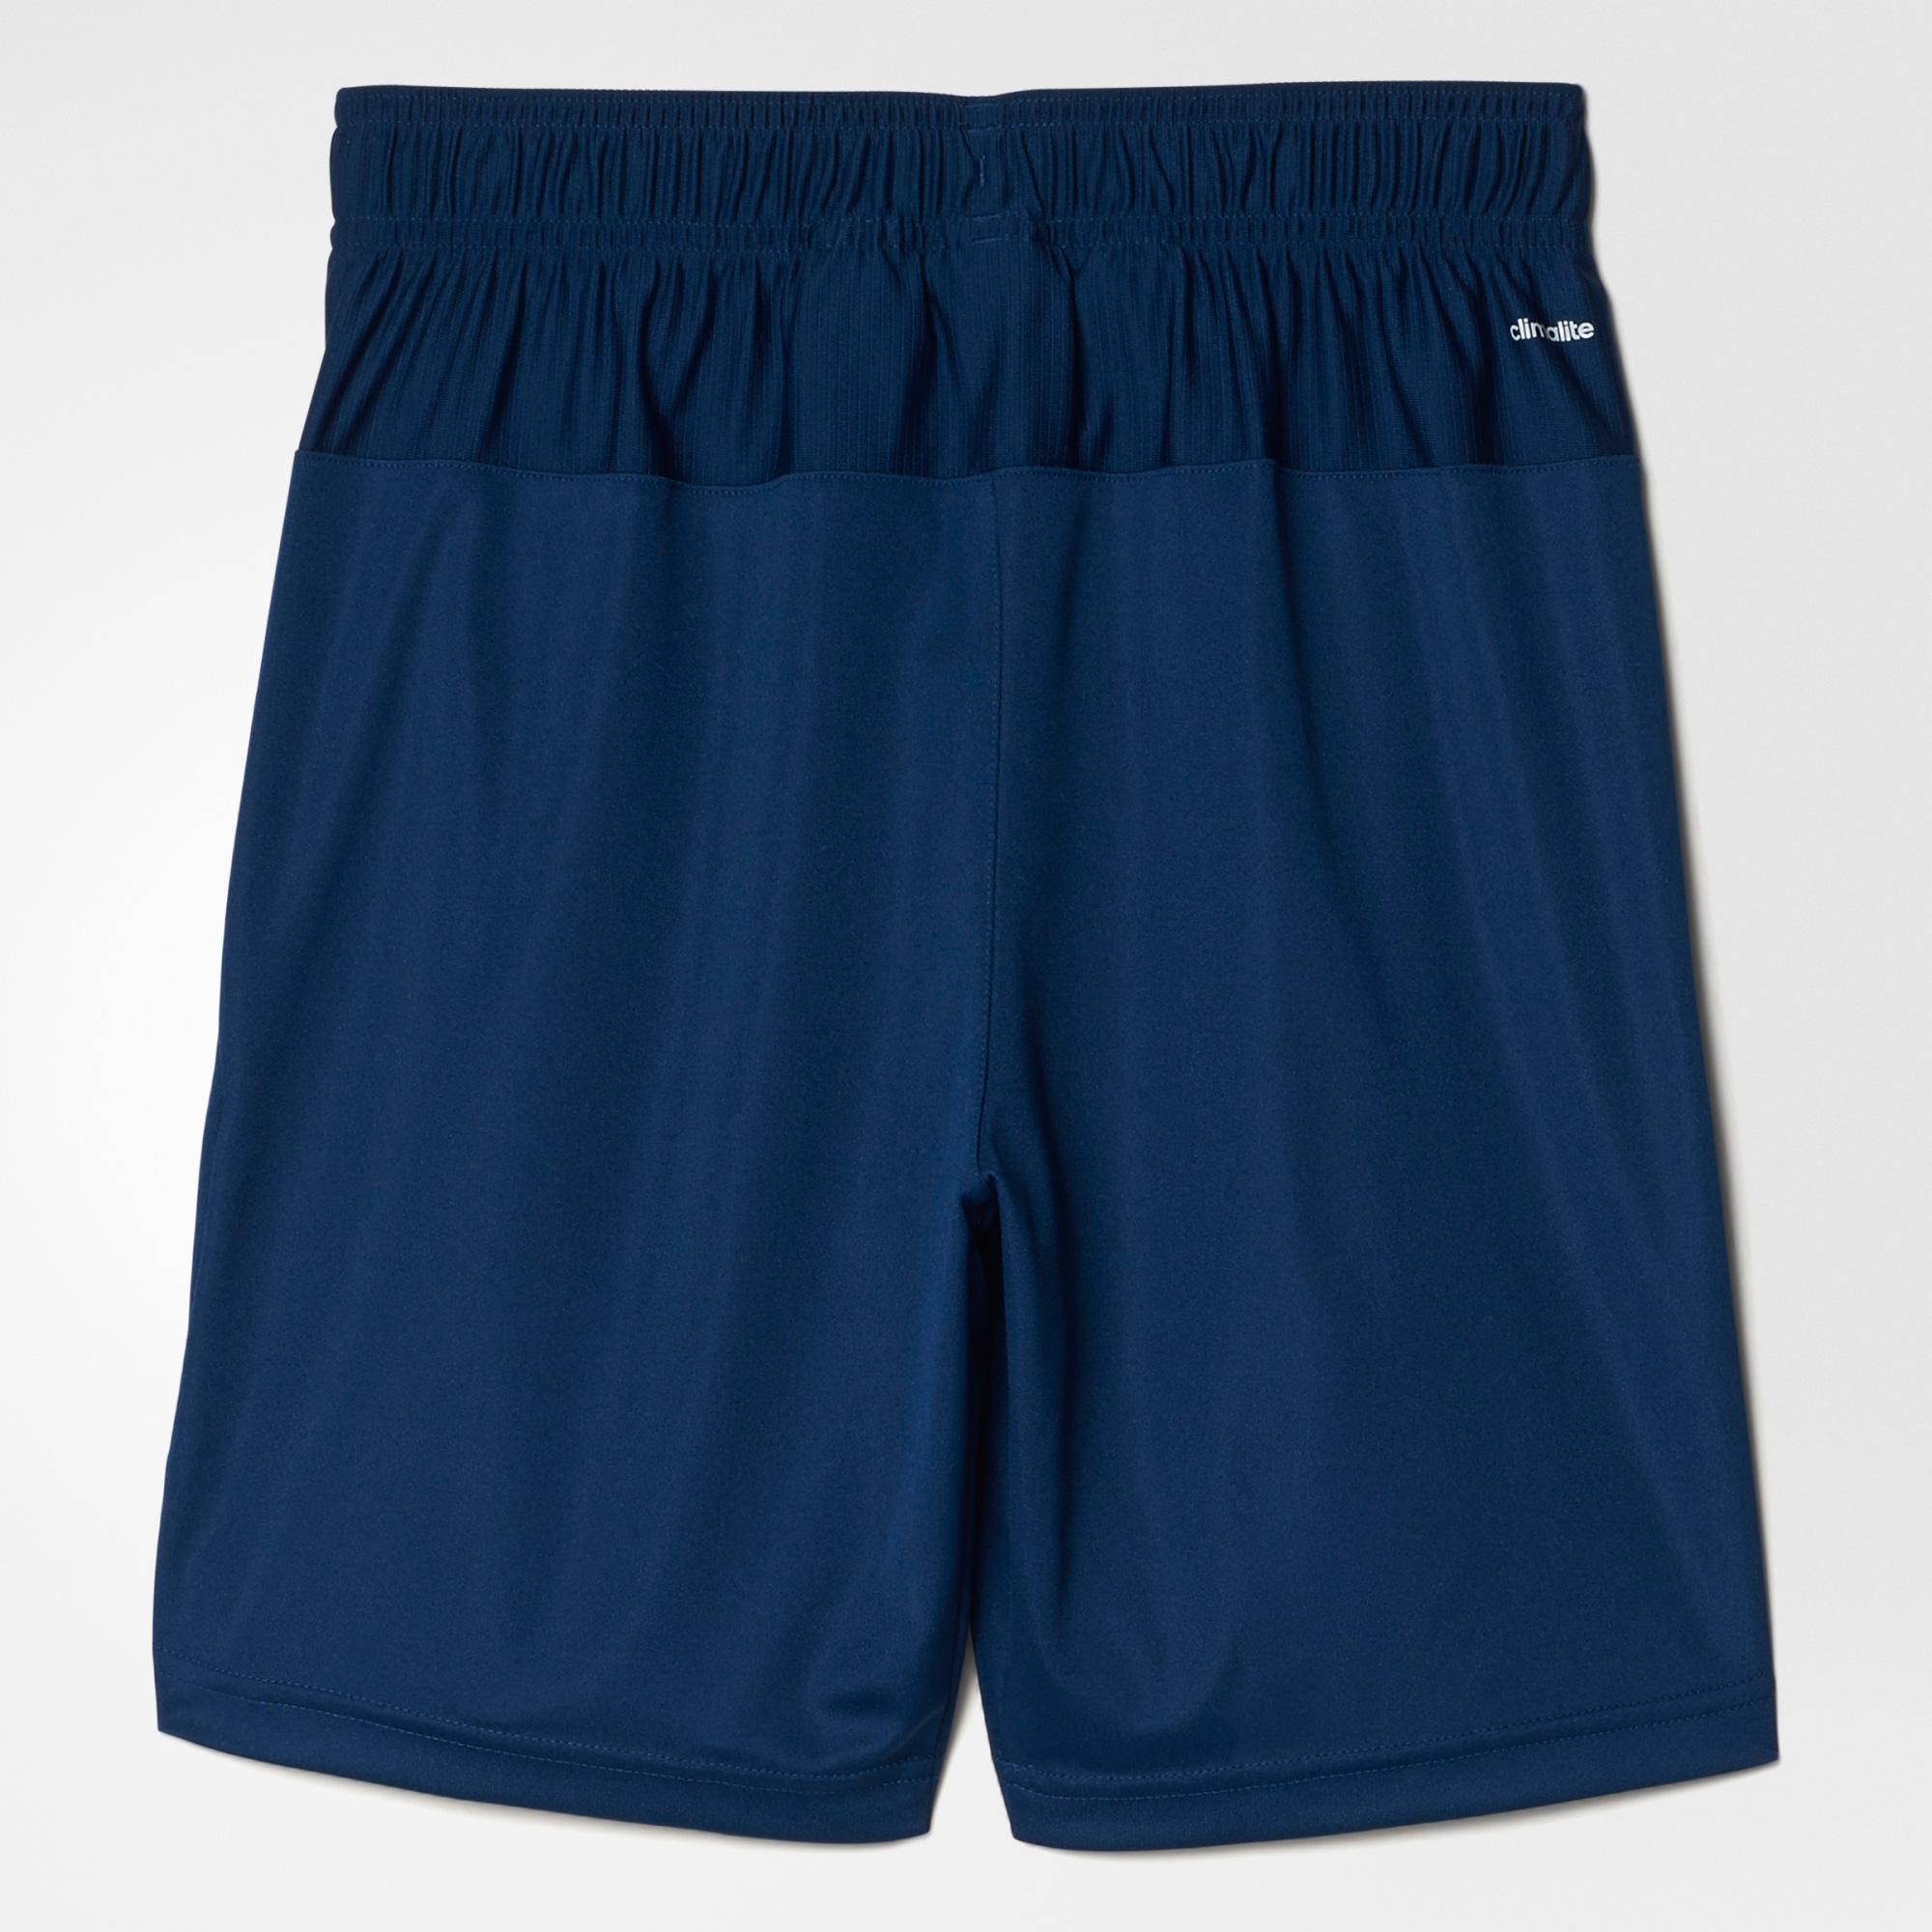 Adidas Boys Club Shorts - Mystery Blue - Tennisnuts.com